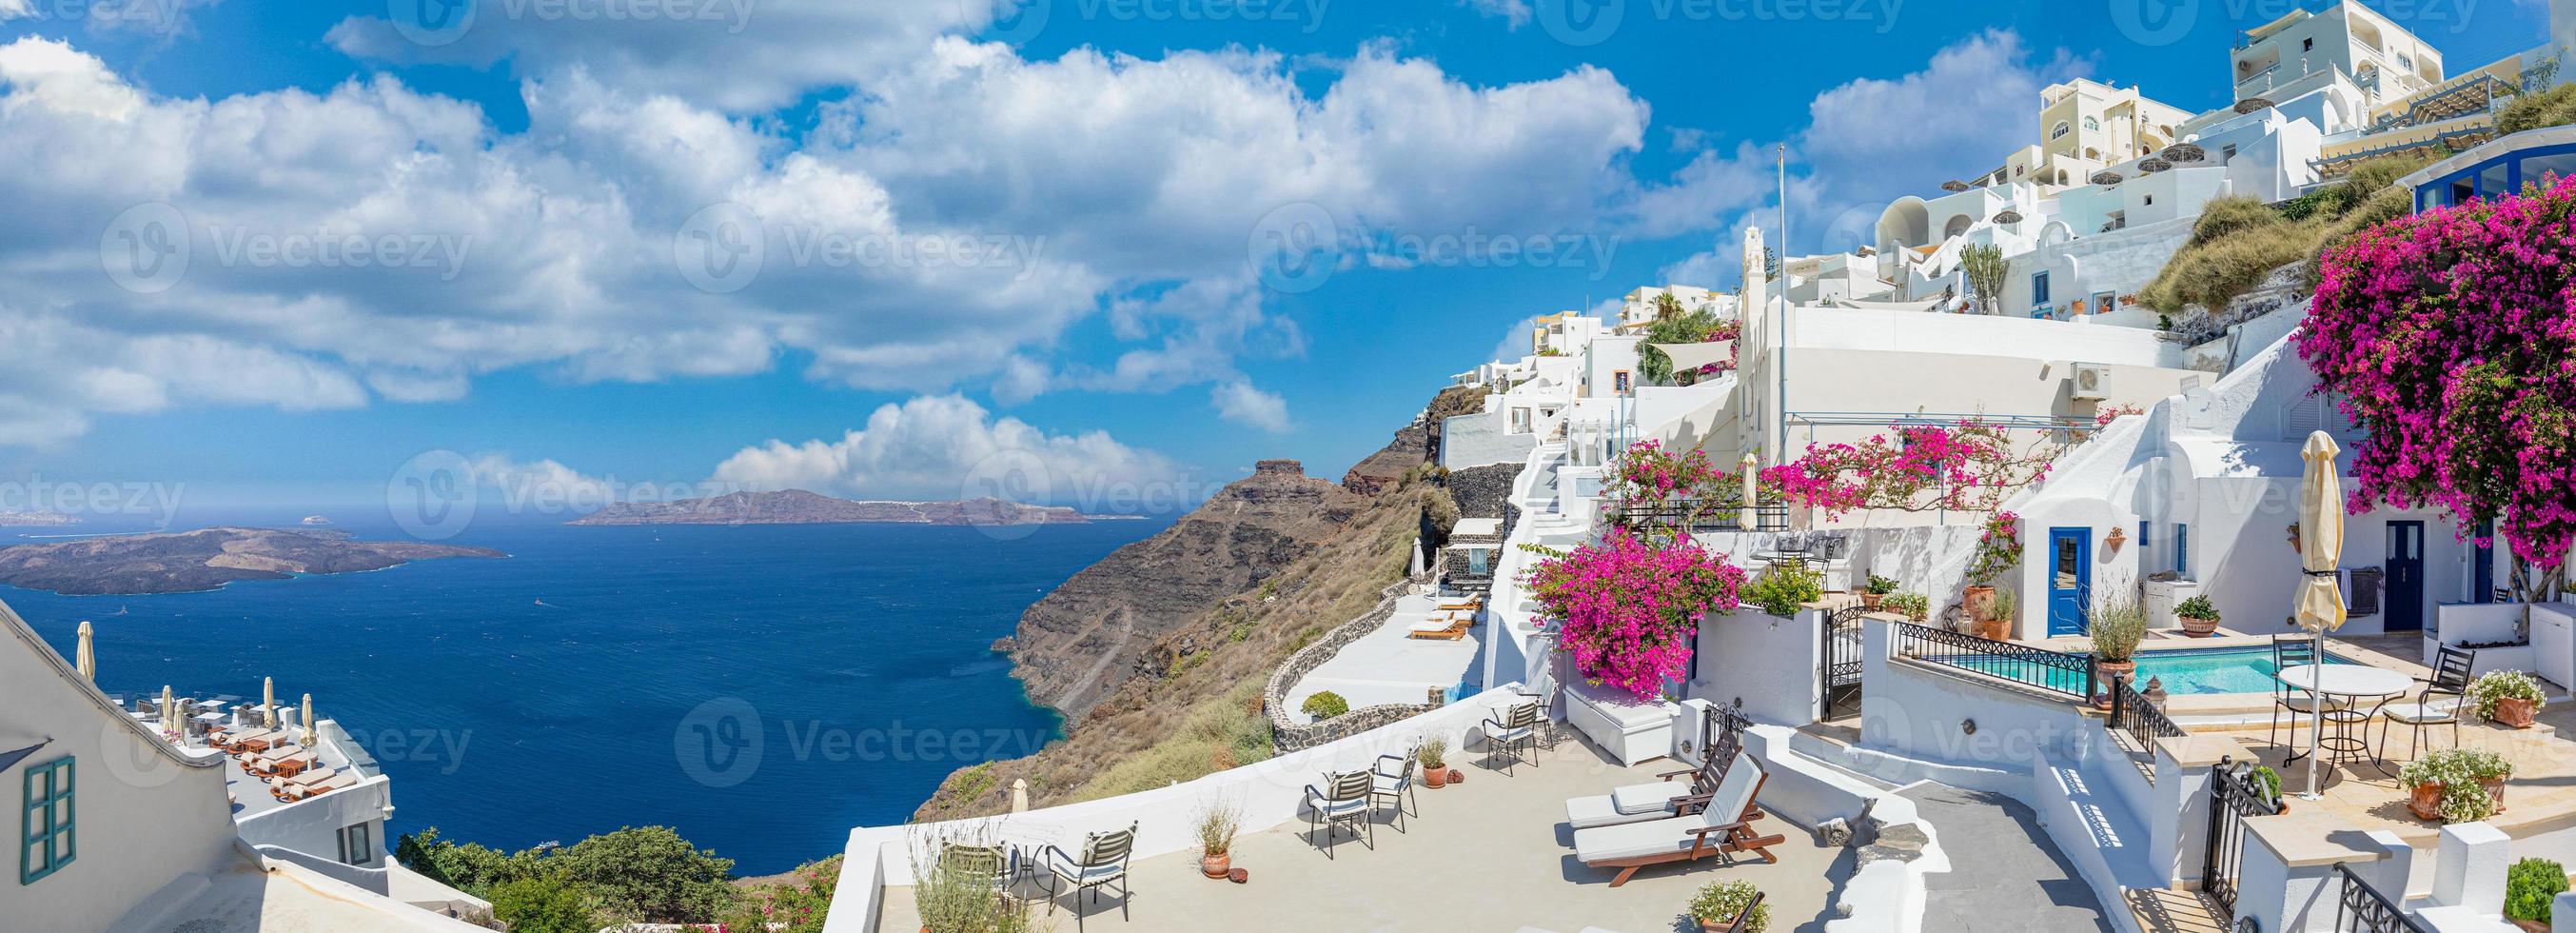 oia stad op het eiland Santorini, Griekenland. traditionele beroemde witblauwe huizen met bloemen onder zonnig weer over de caldera, Egeïsche zee. mooi zomers landschap, uitzicht op zee, luxe reisvakantie foto